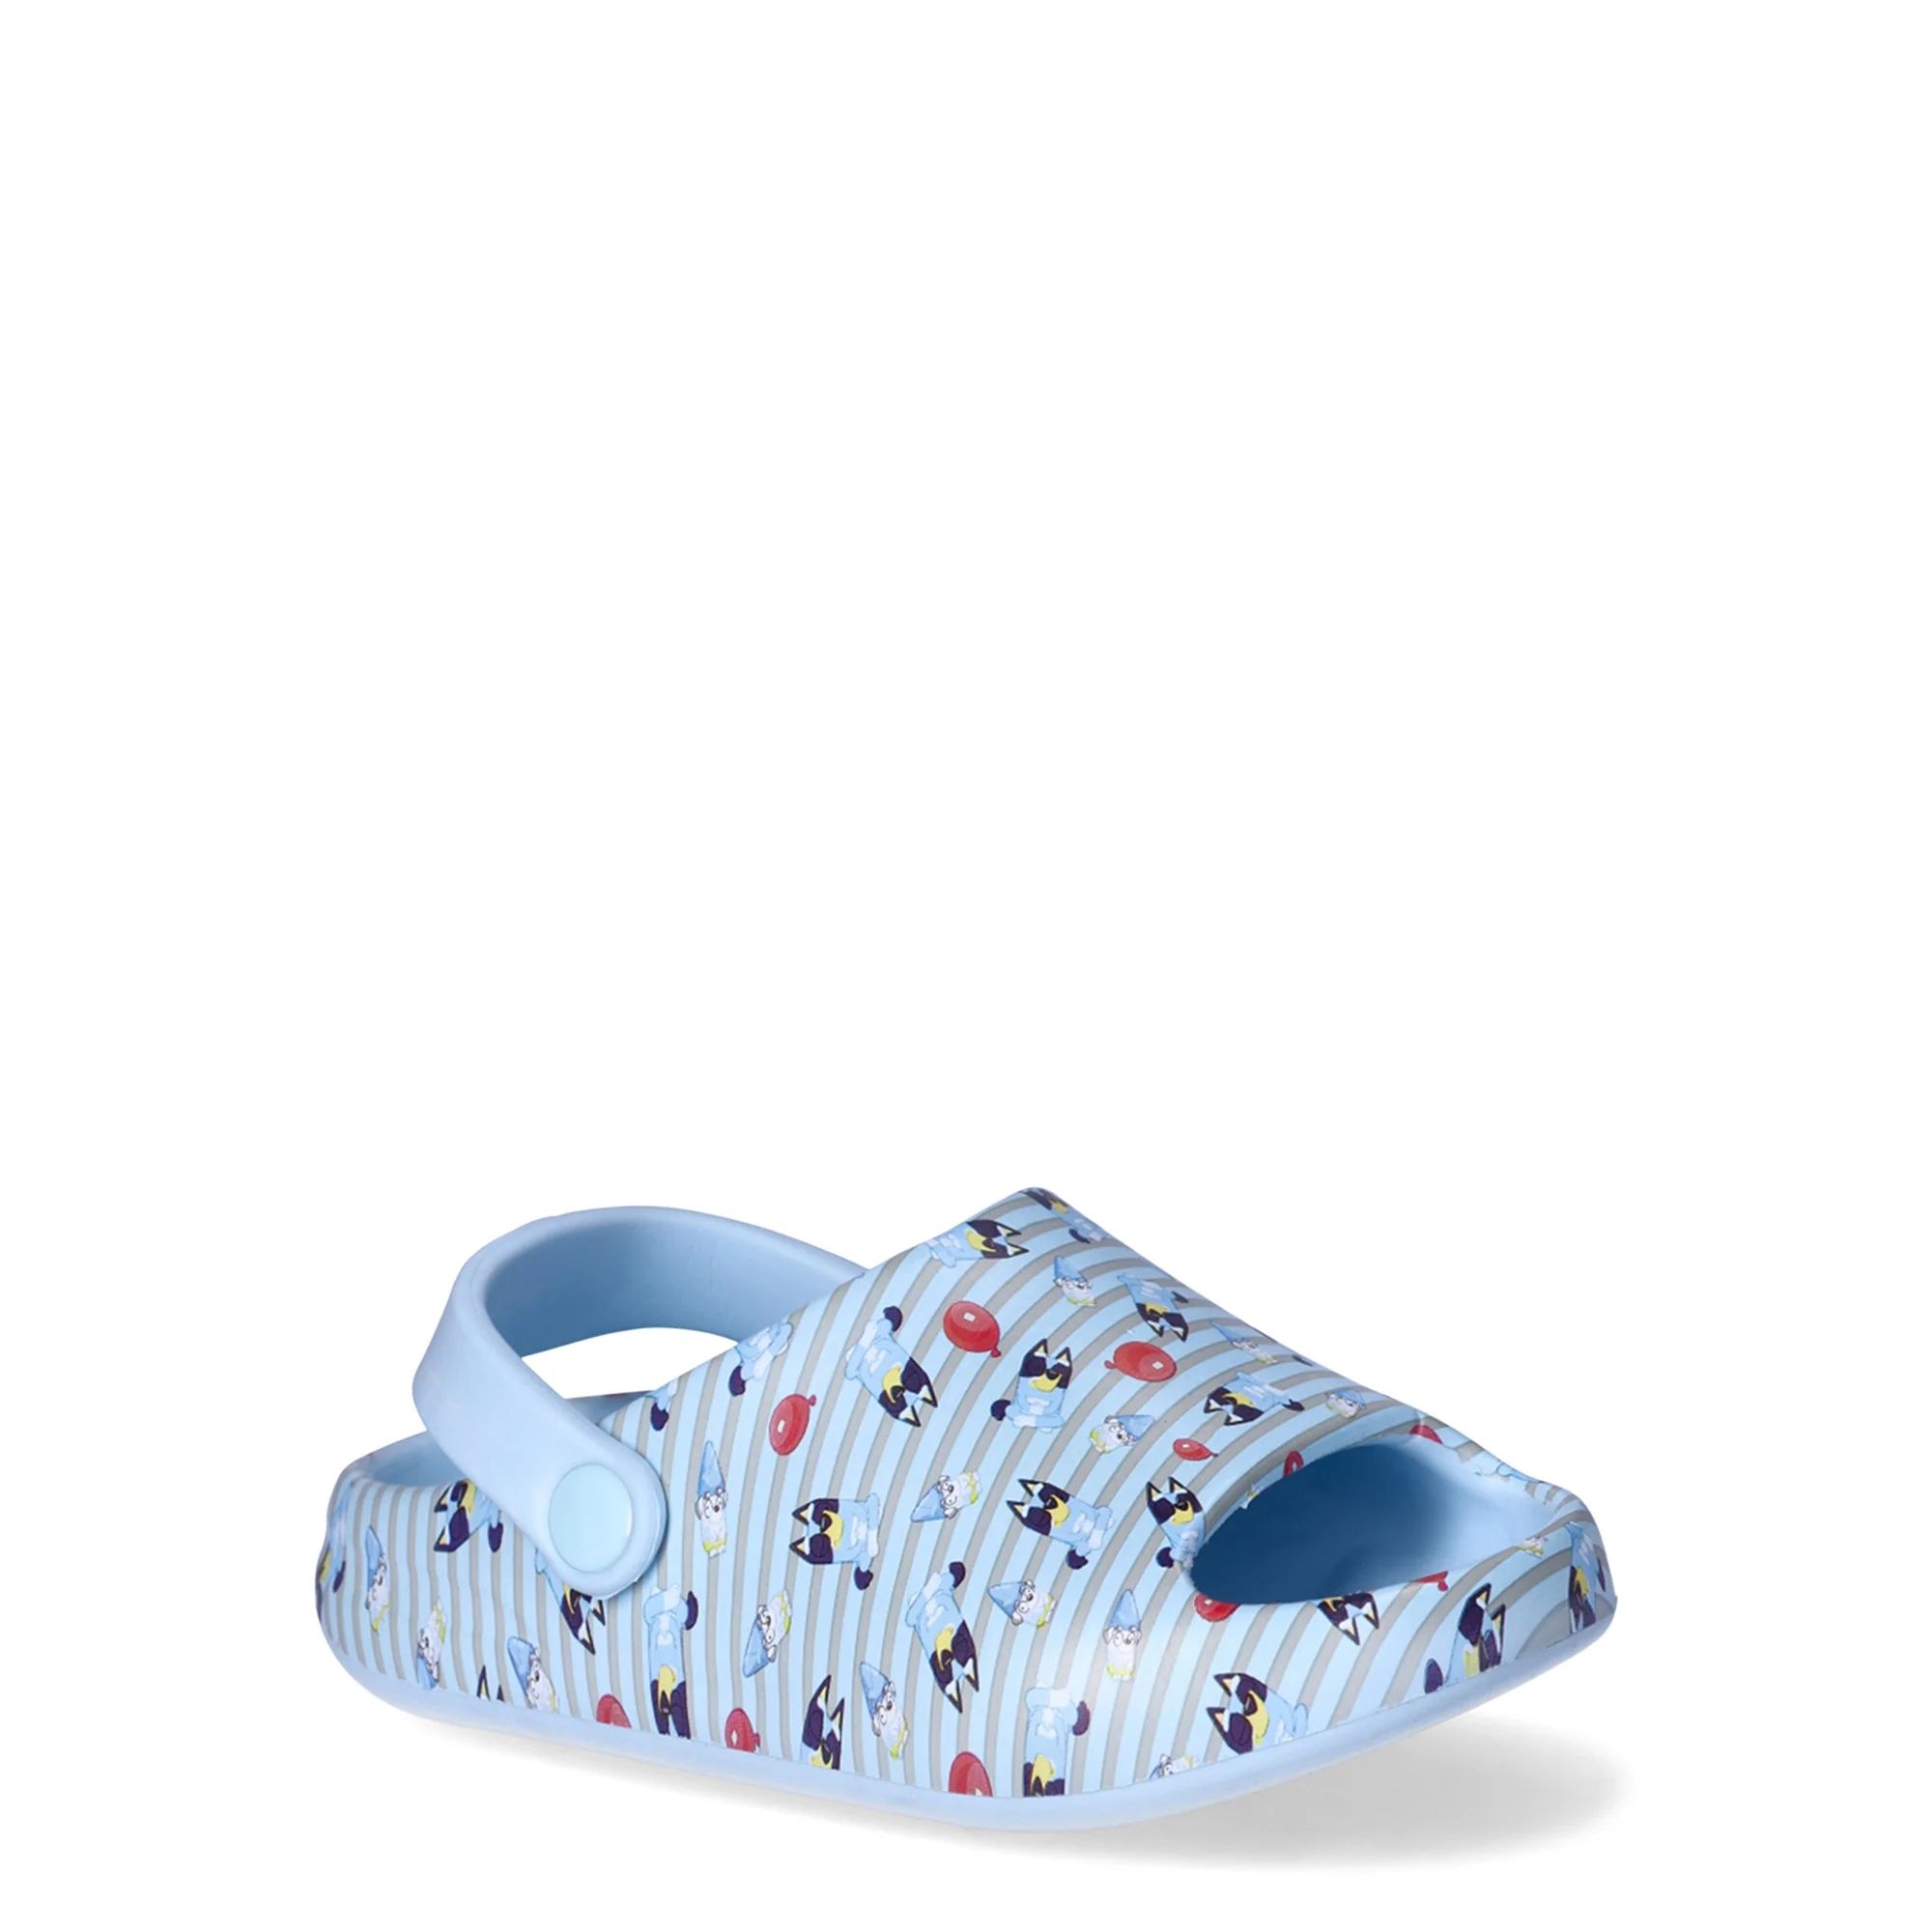 Bluey Toddler Boys Comfort Slide Sandals | Walmart (US)